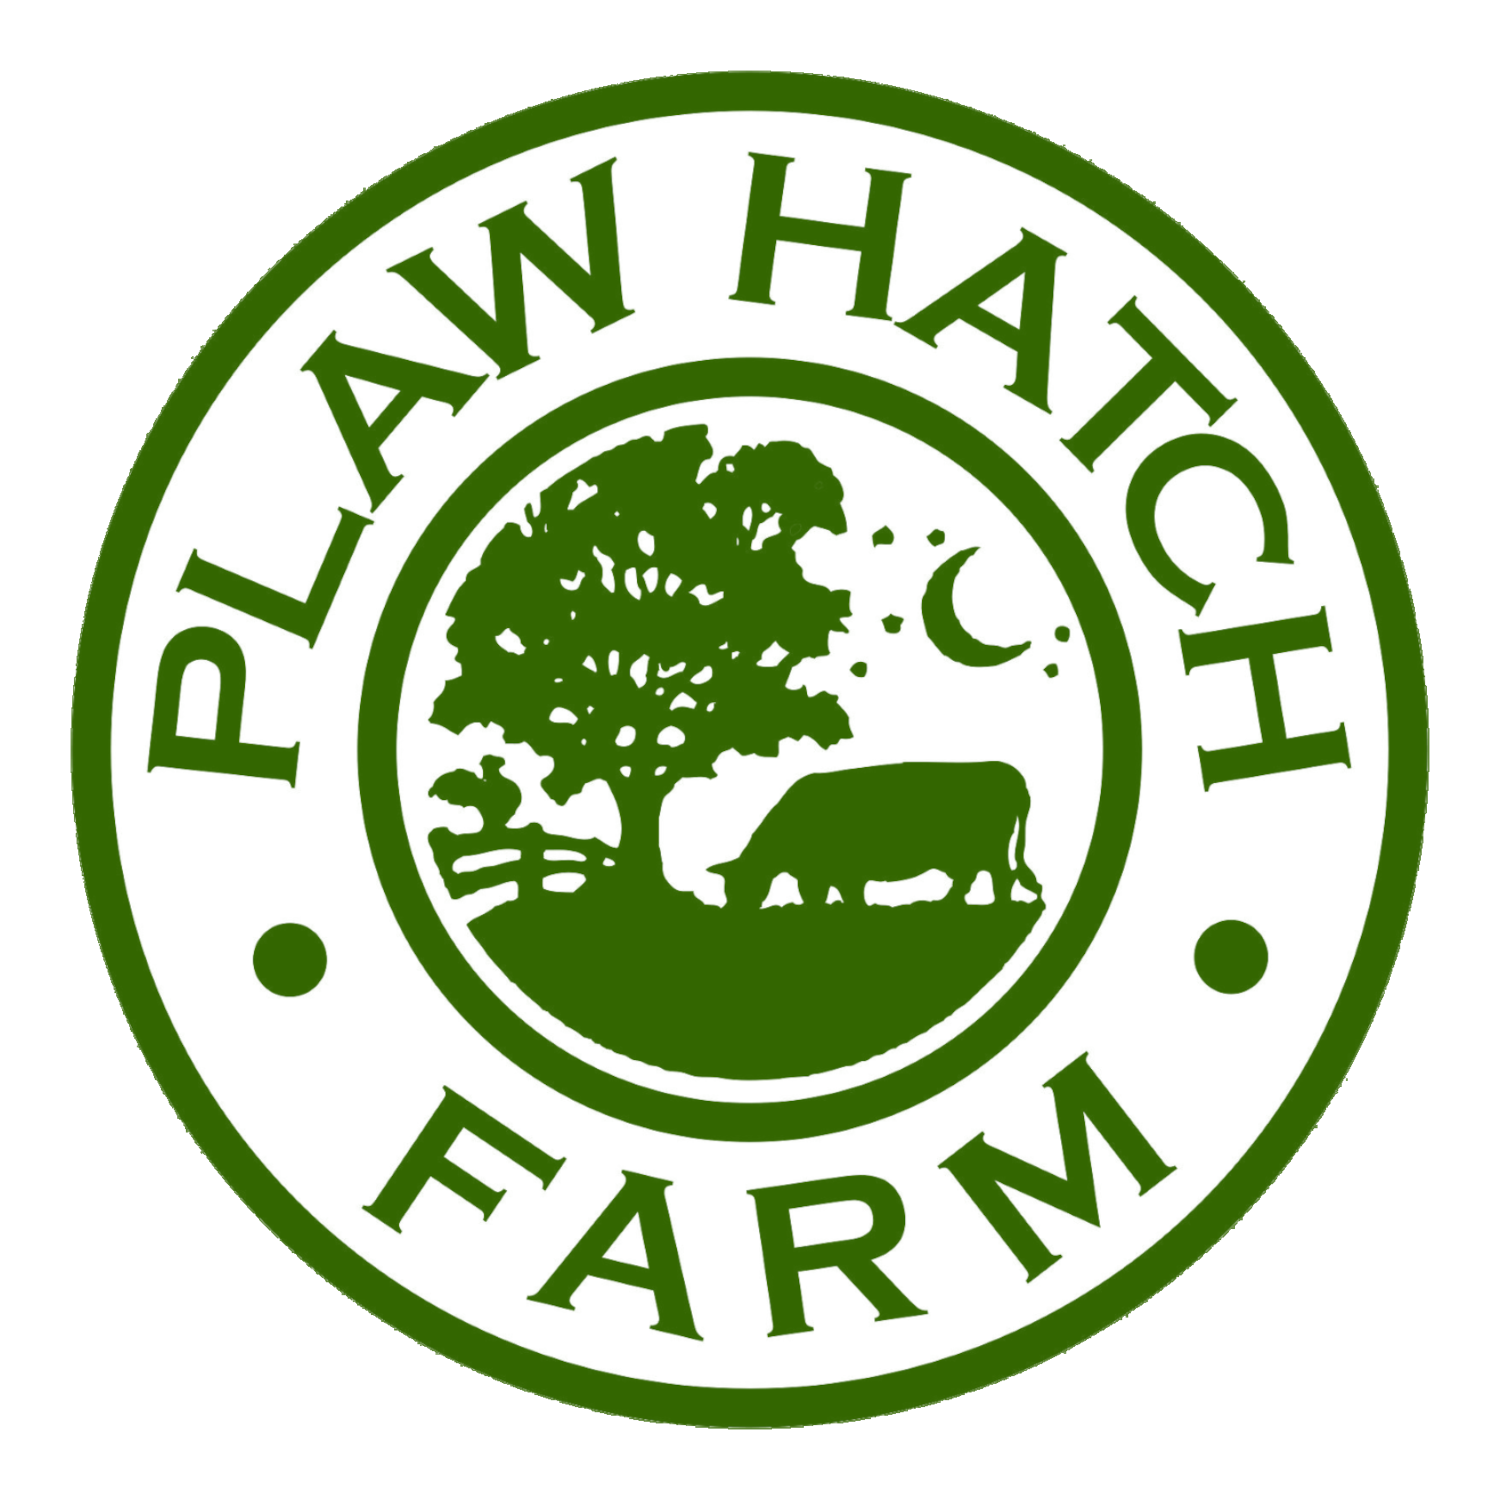 Plaw Hatch Farm